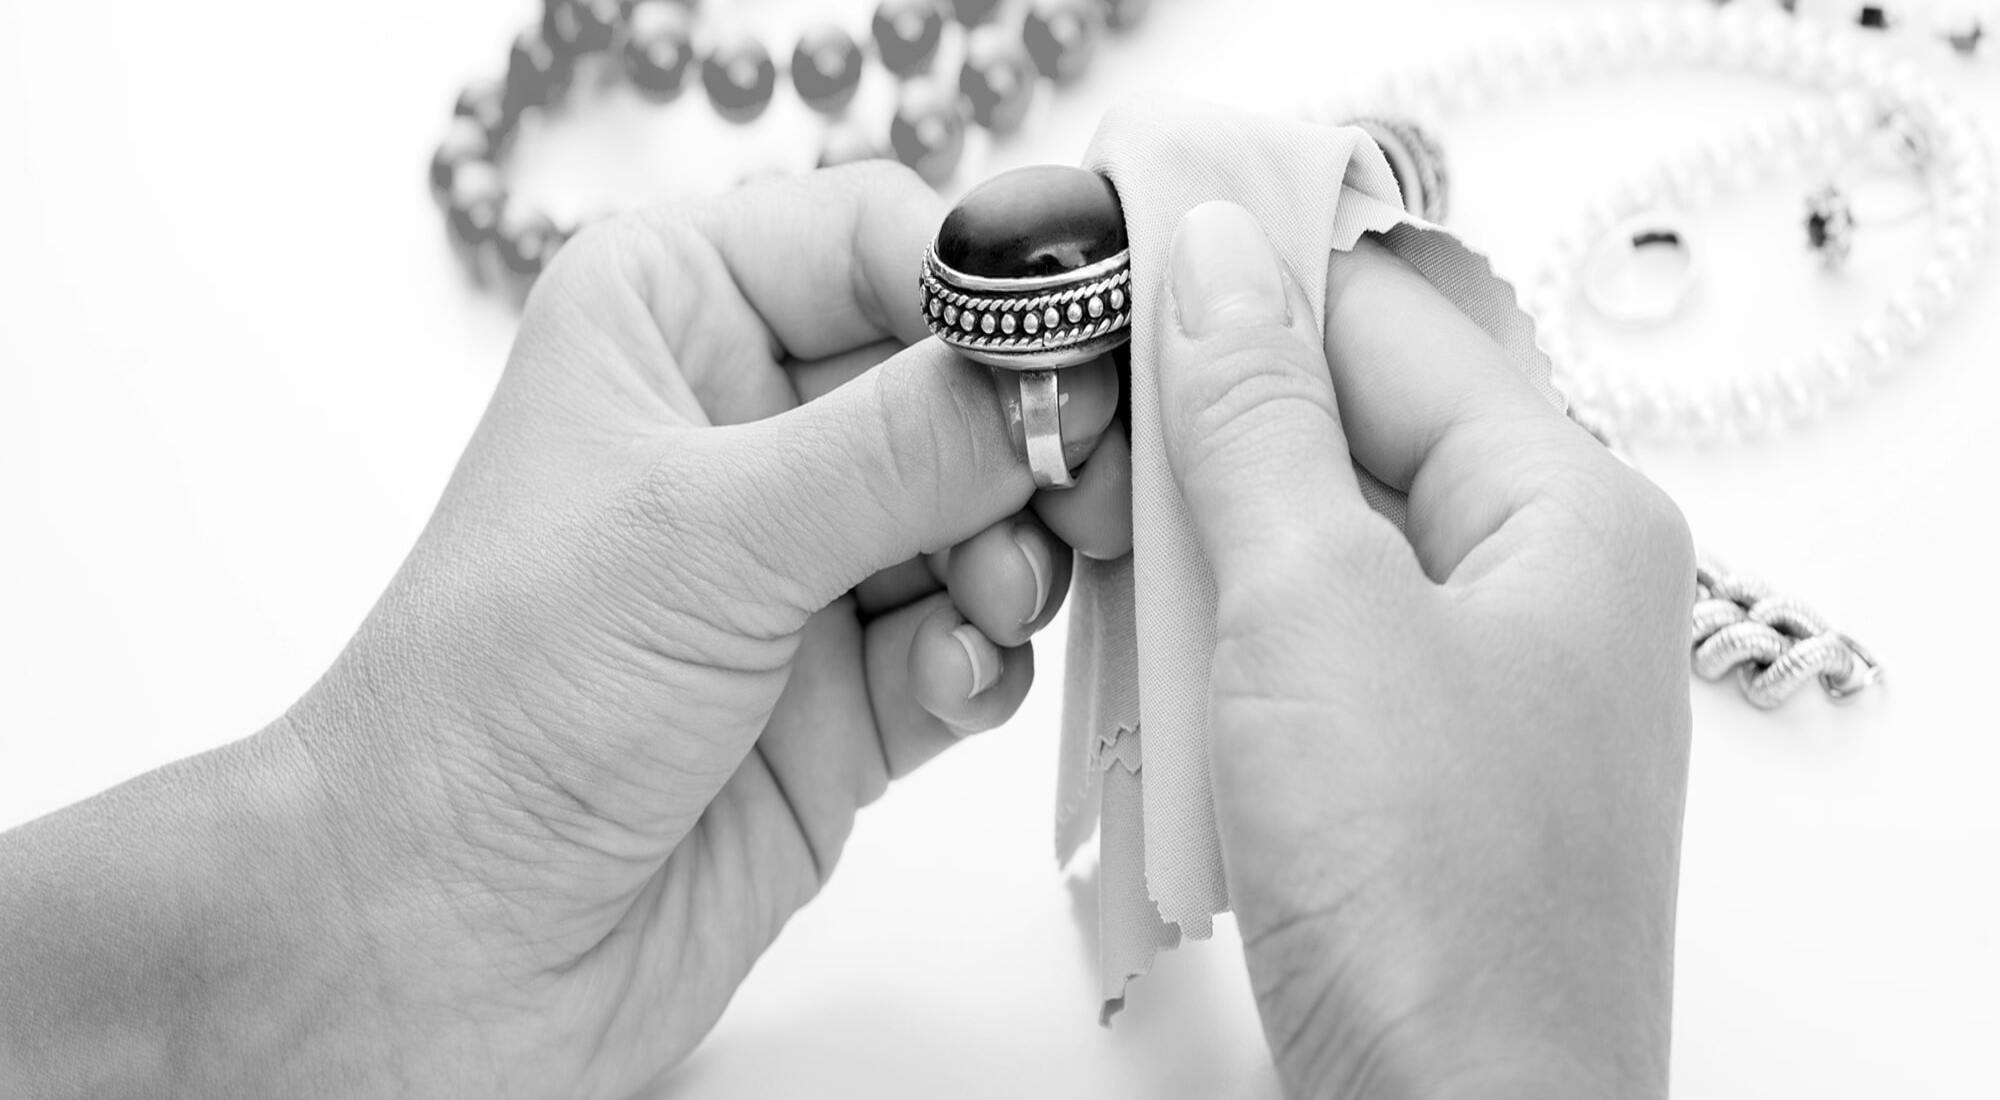 Comment Nettoyer des Bijoux en Or ? 20 Astuces pour les faire Briller. –  Bracelet Fantaisie®